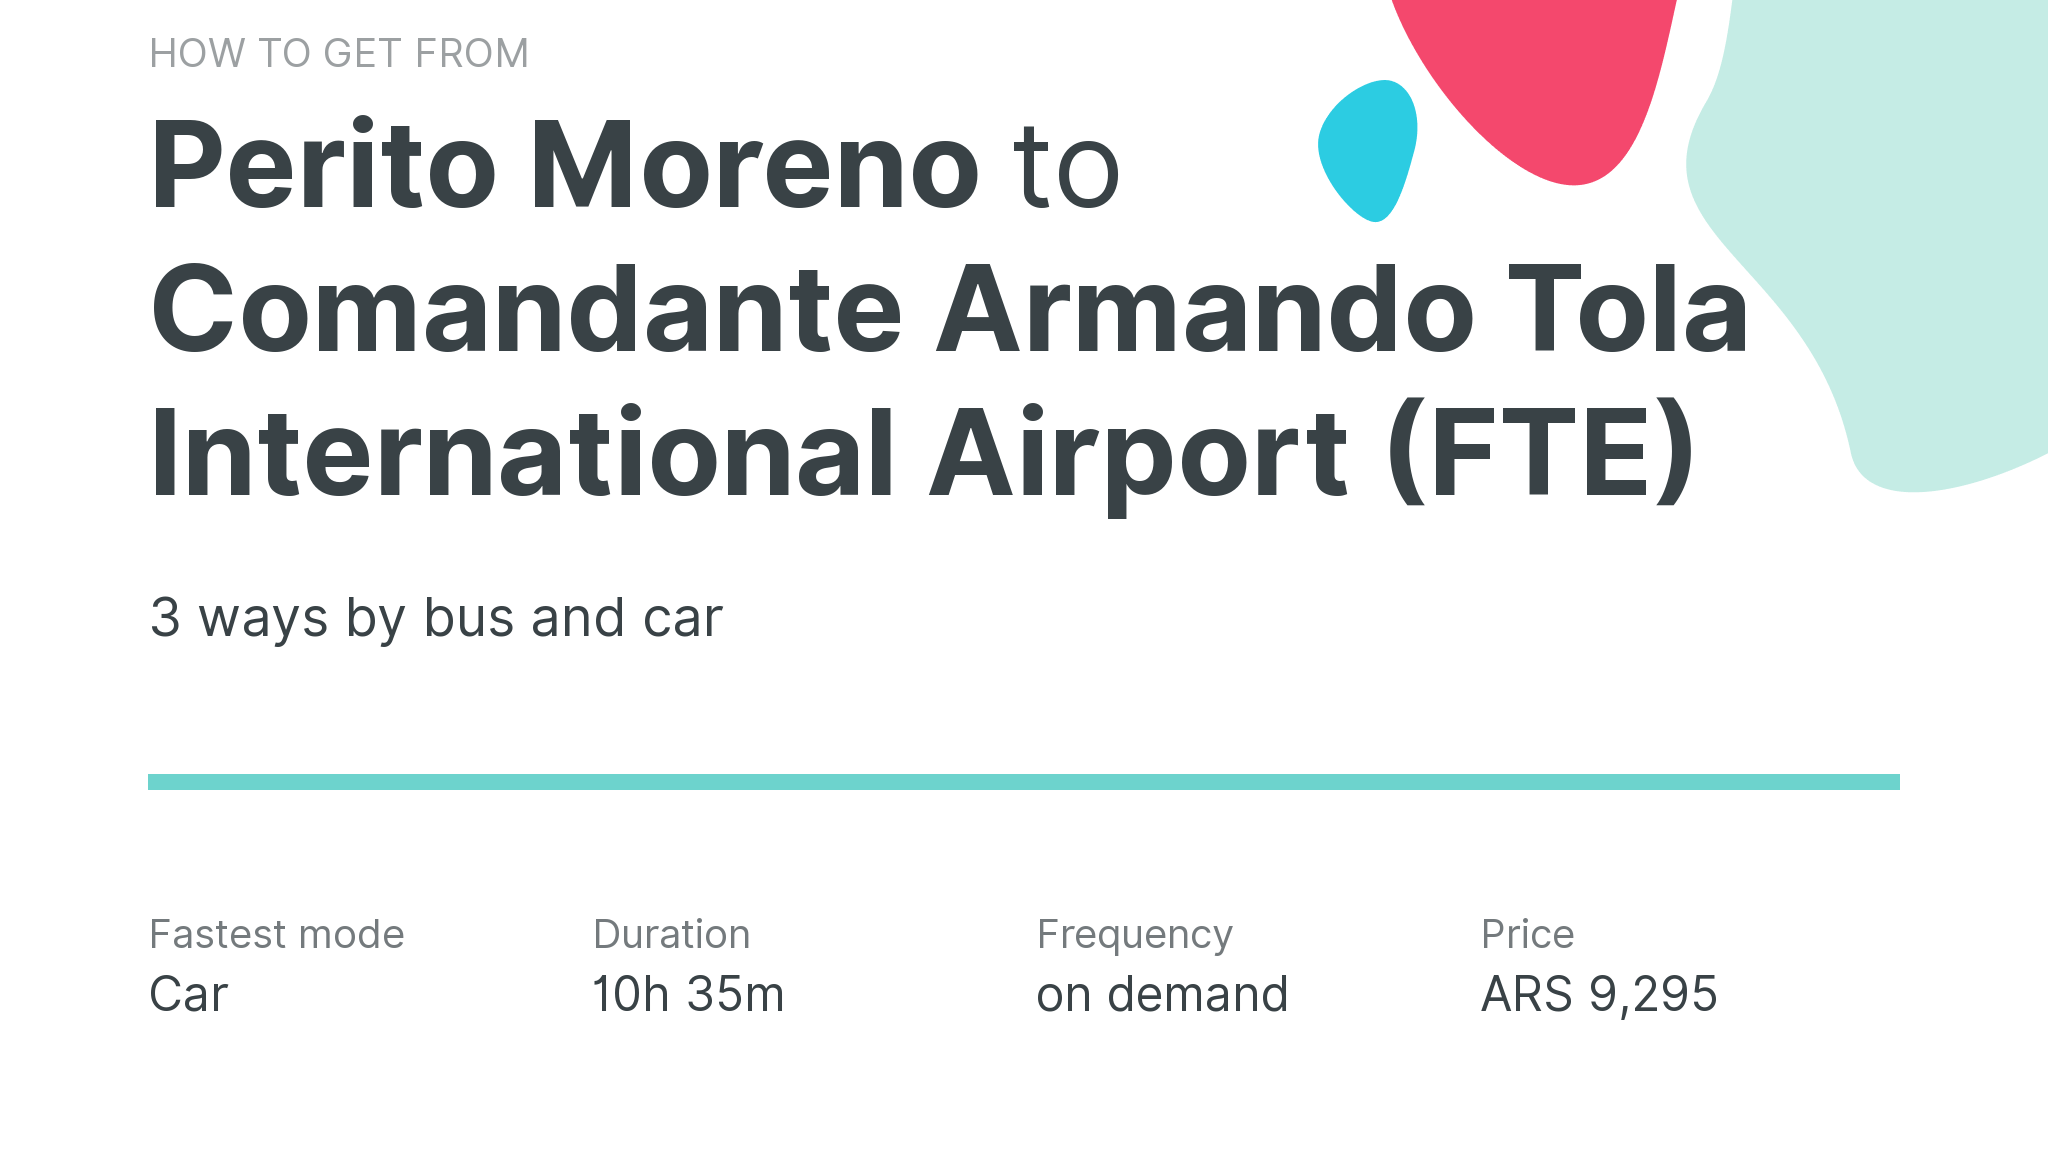 How do I get from Perito Moreno to Comandante Armando Tola International Airport (FTE)